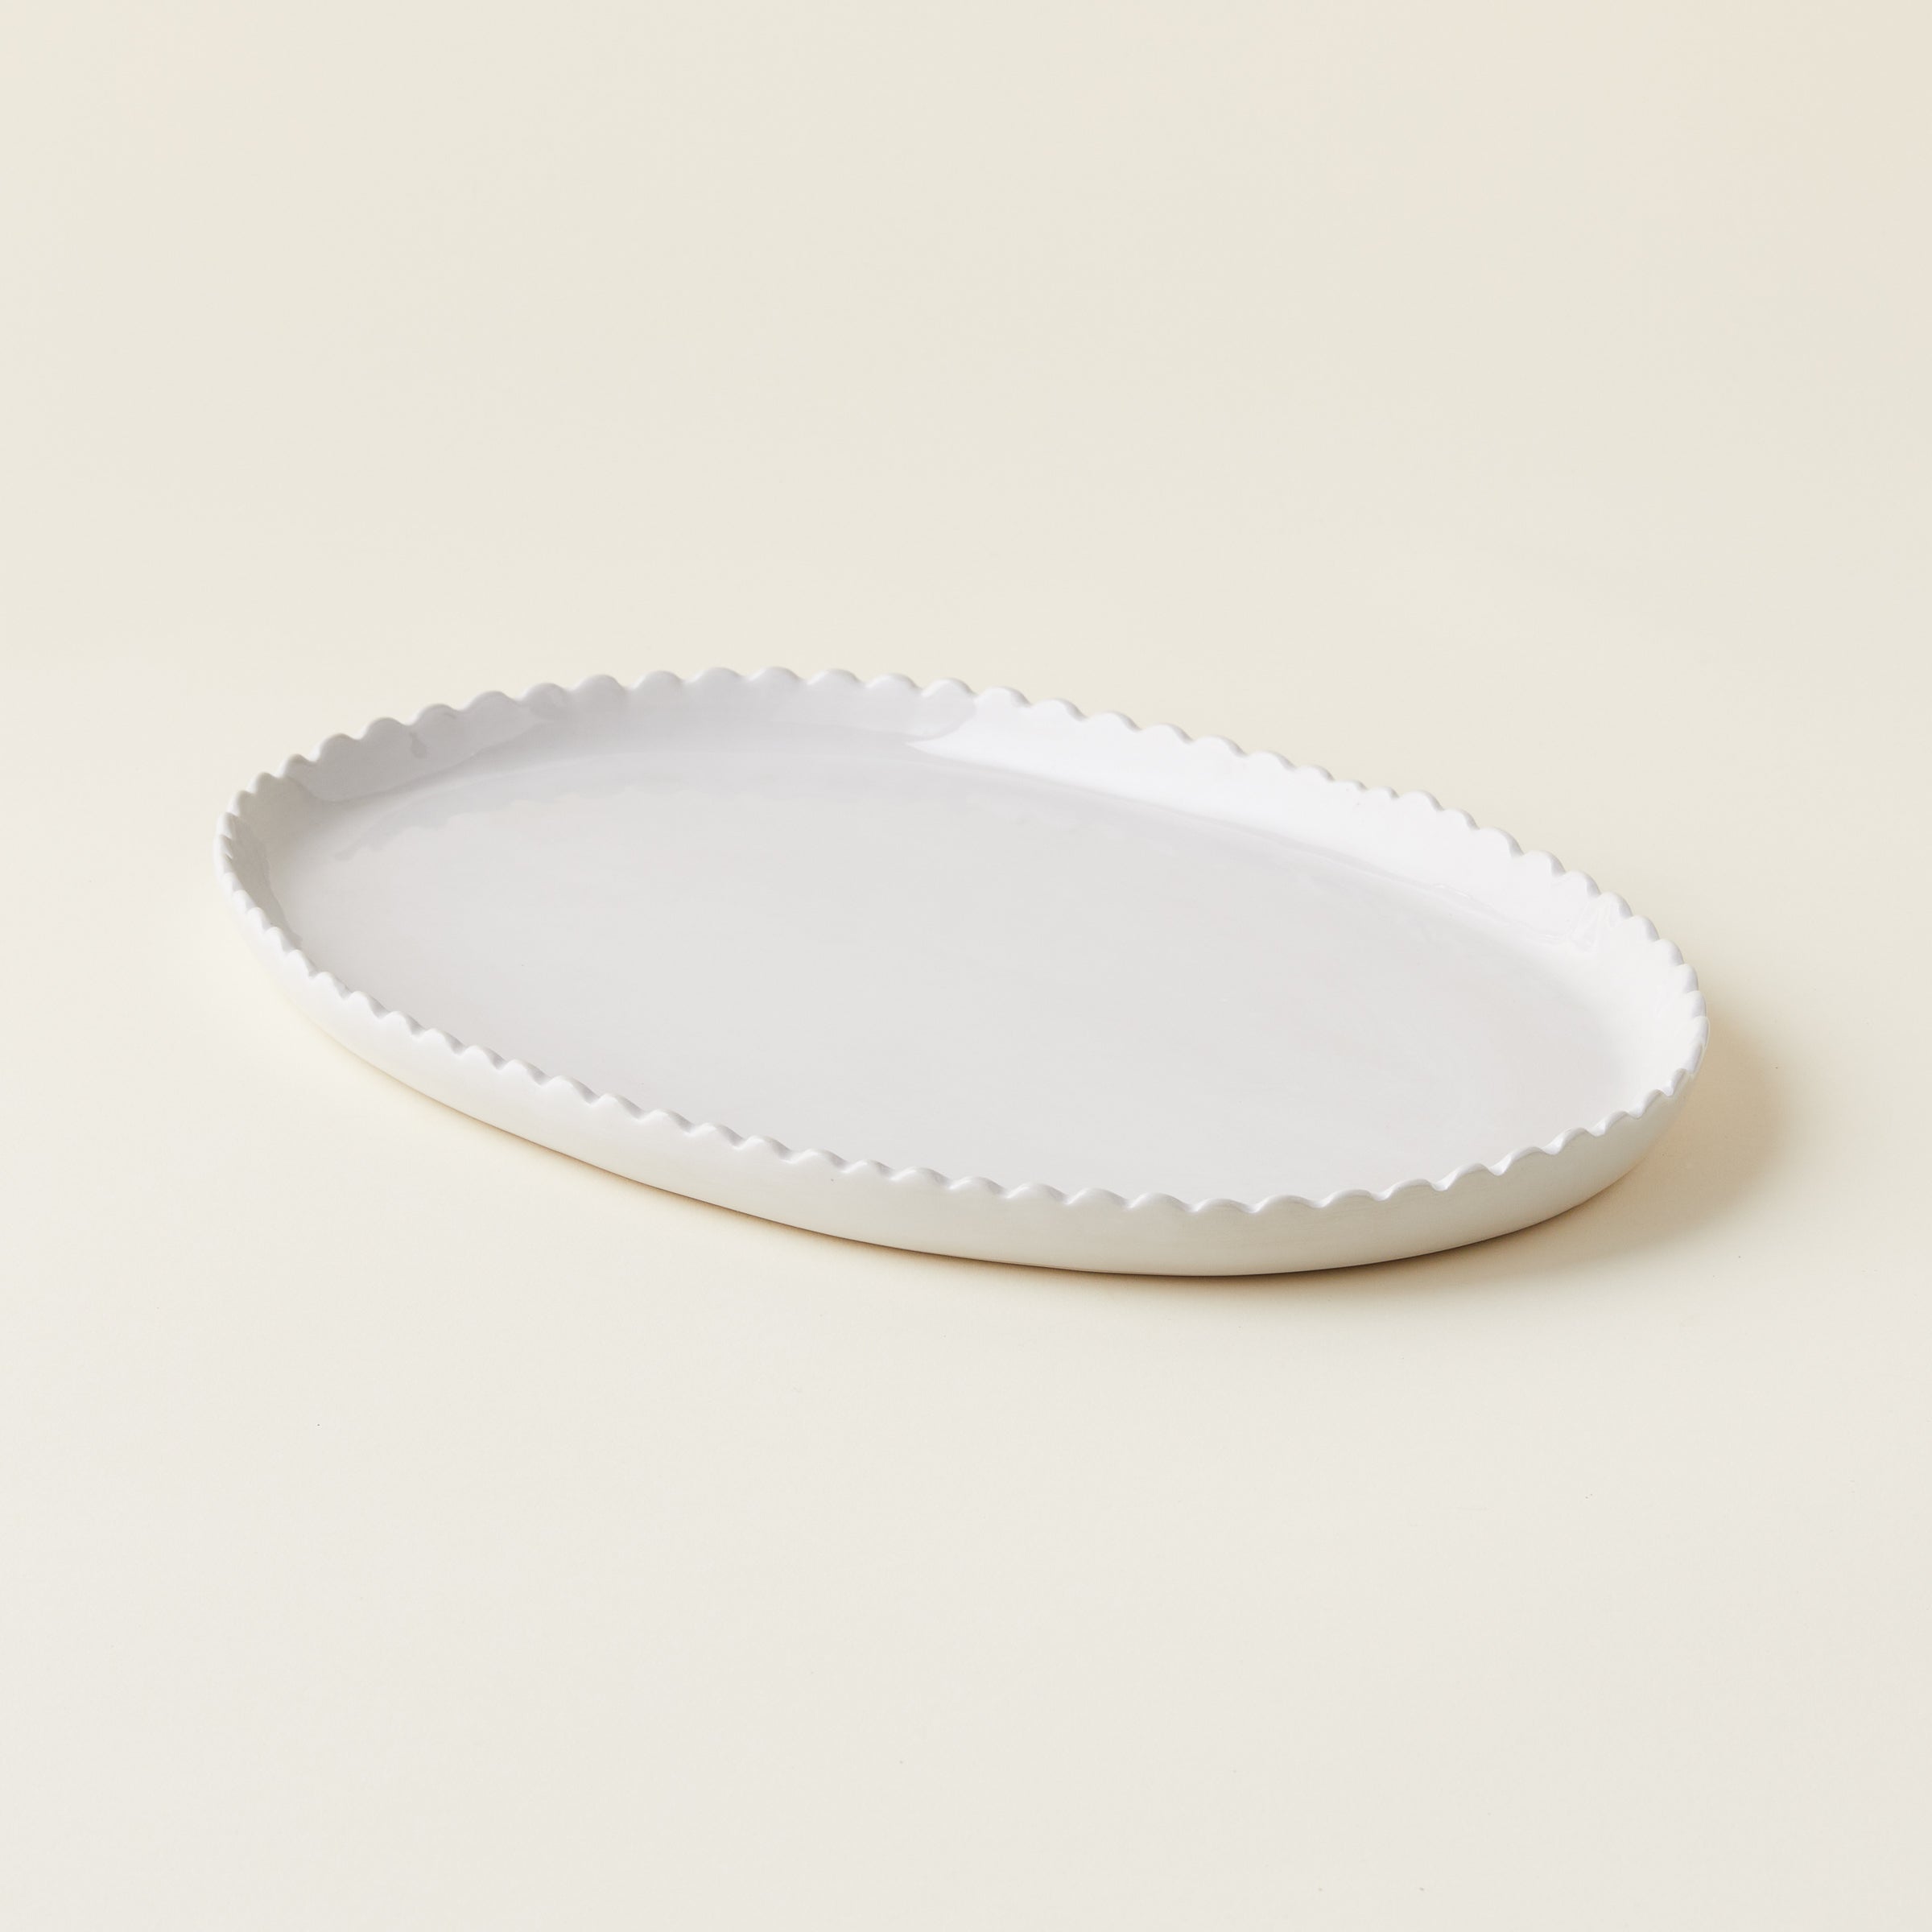 Scalloped Oval Platter